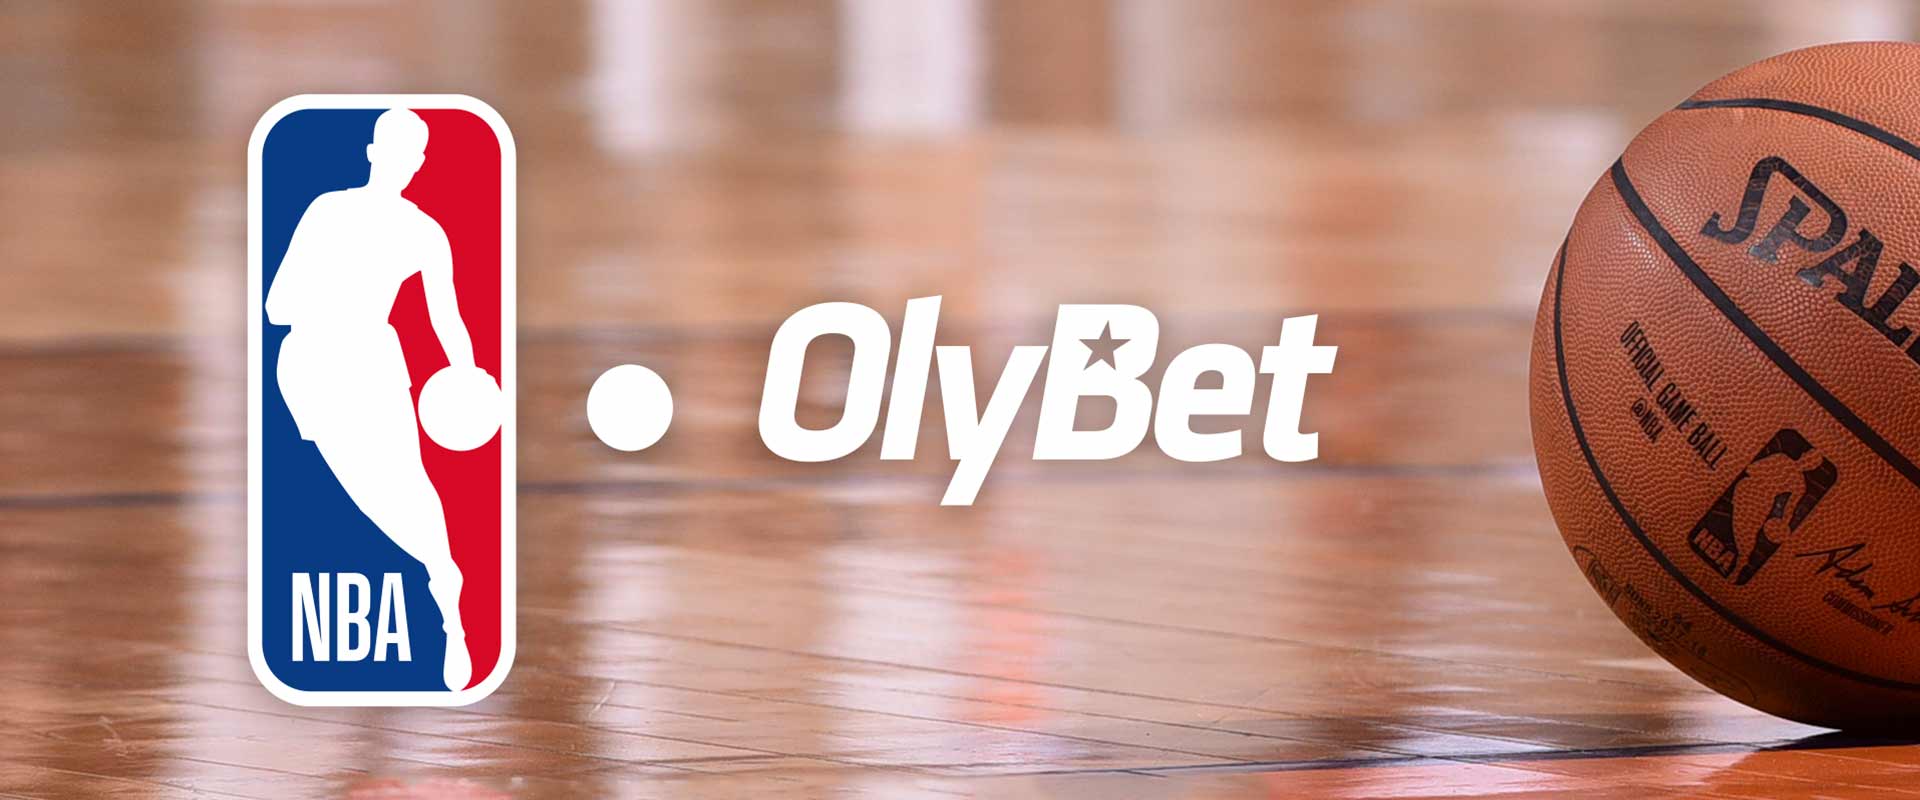 Olybet tampa oficialiu NBA lažybų partneriu Baltijos šalyse bei Slovakijoje